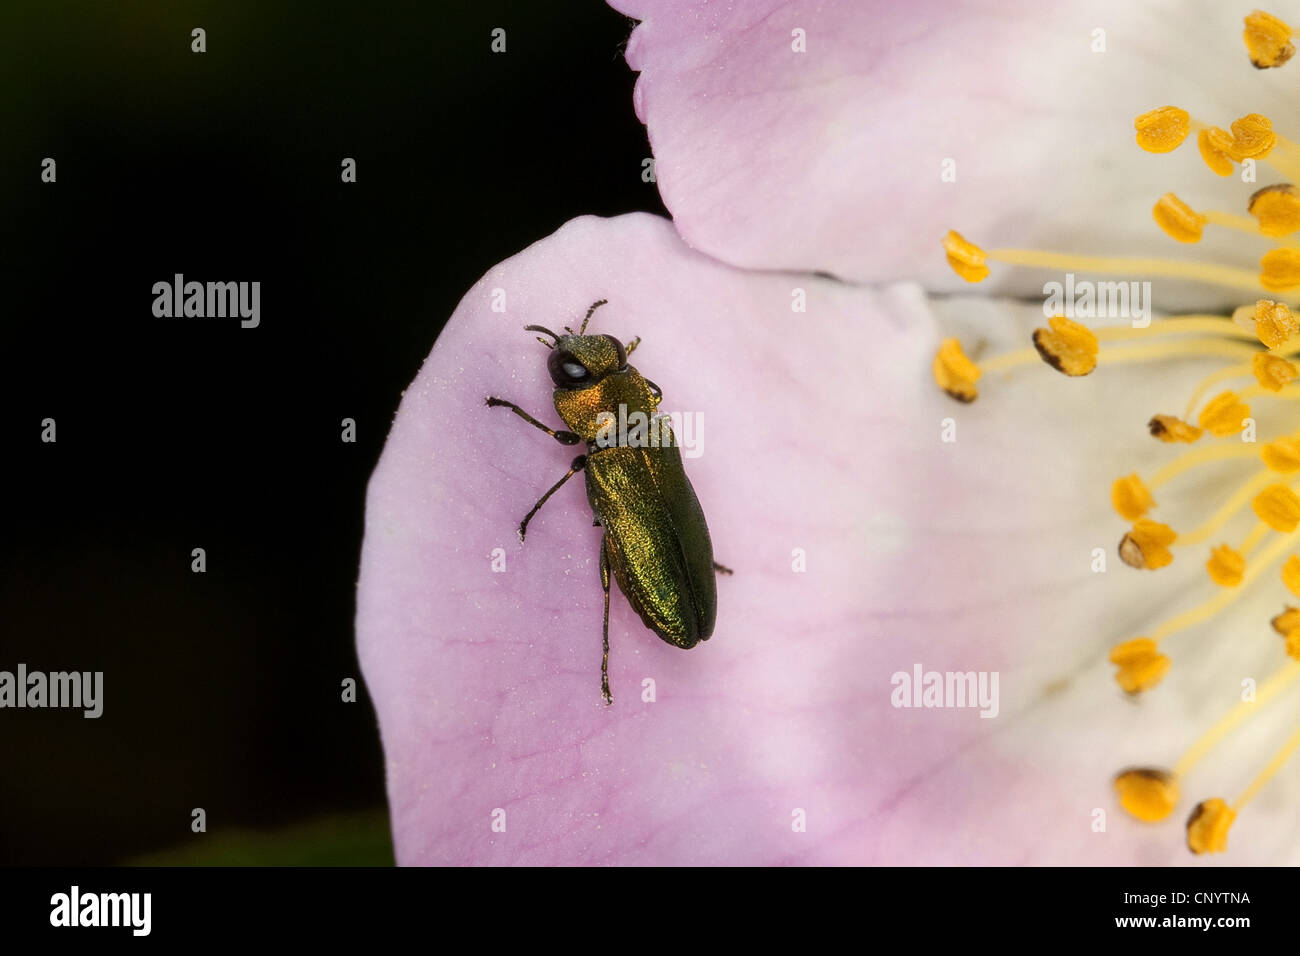 Jewel beetle, Metallic wood-boring beetle (Anthaxia nitidula), sitting on a flower, Germany Stock Photo